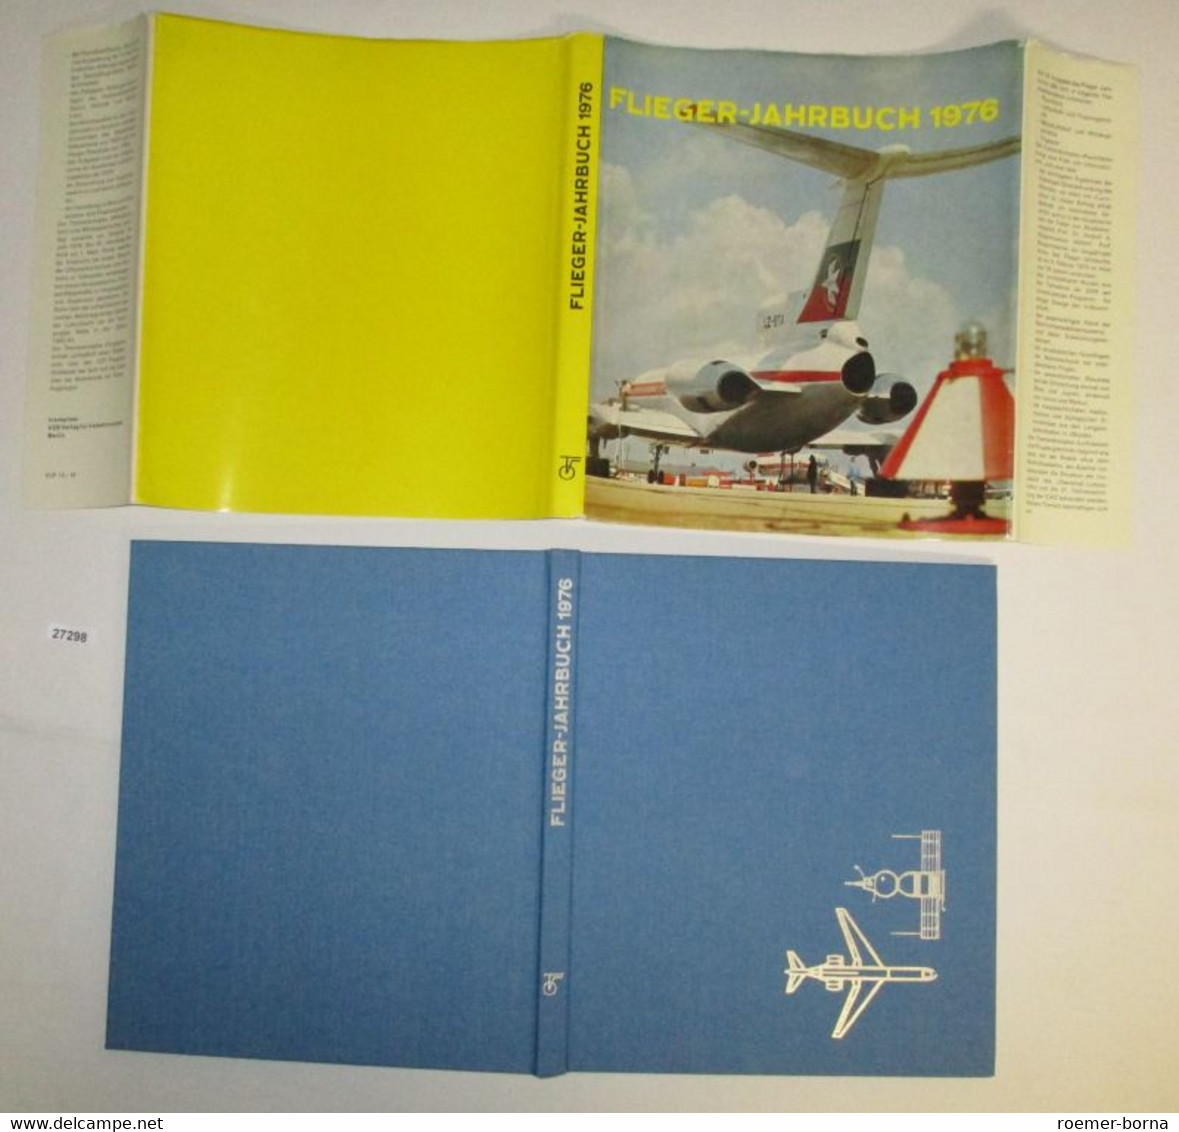 Flieger Jahrbuch 1976 - Kalender